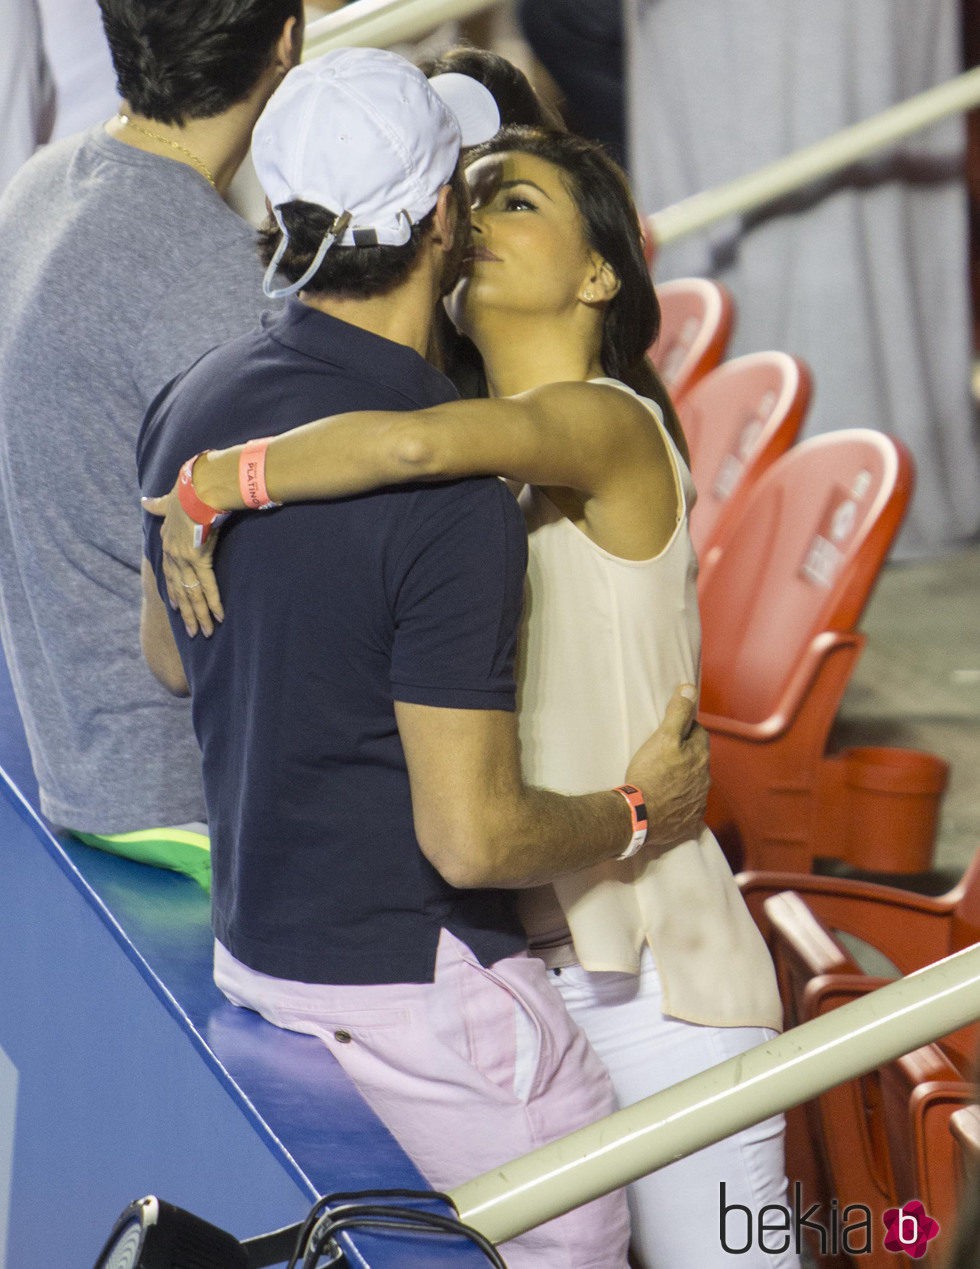 Eva Longoria y José Antonio Bastón muy cariñosos en el Torneo de Tenis de Acapulco